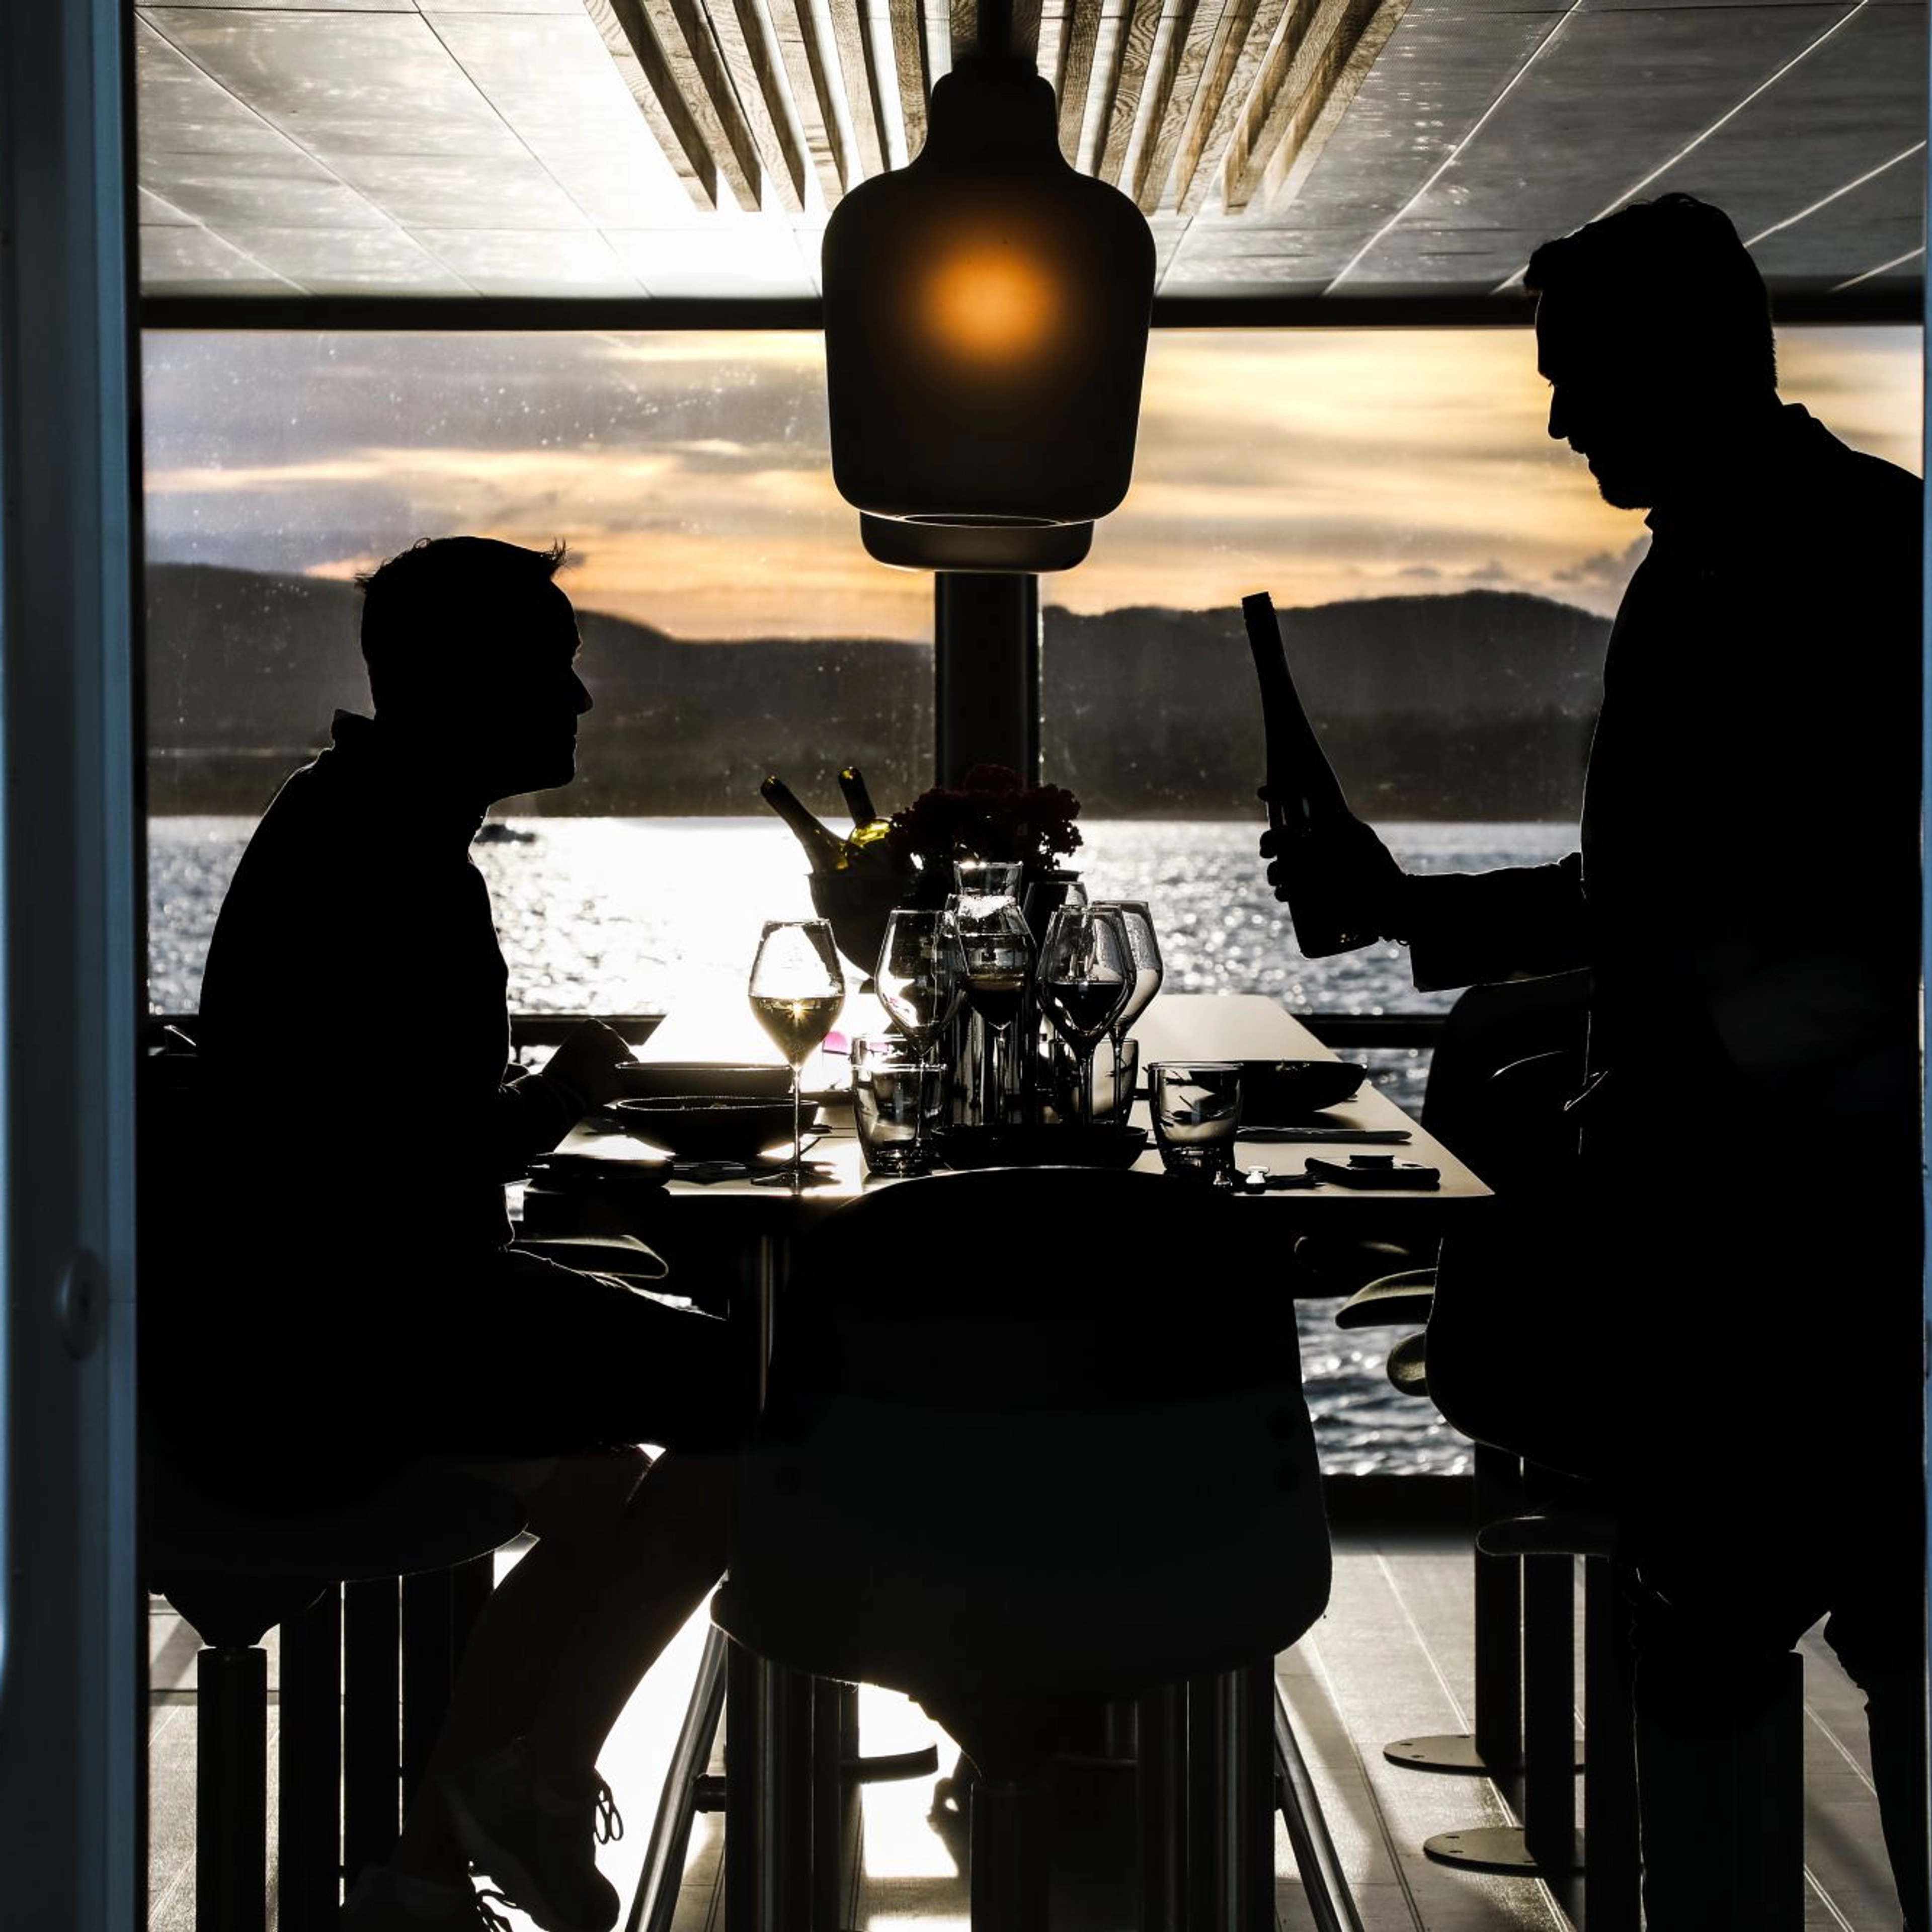 Dinner-Kreuzfahrt auf dem Oslofjord mit einem ruhigen Hybridboot - genießen Sie ein köstliches Essen an Bord - Fahrt von Oslo, Norwegen